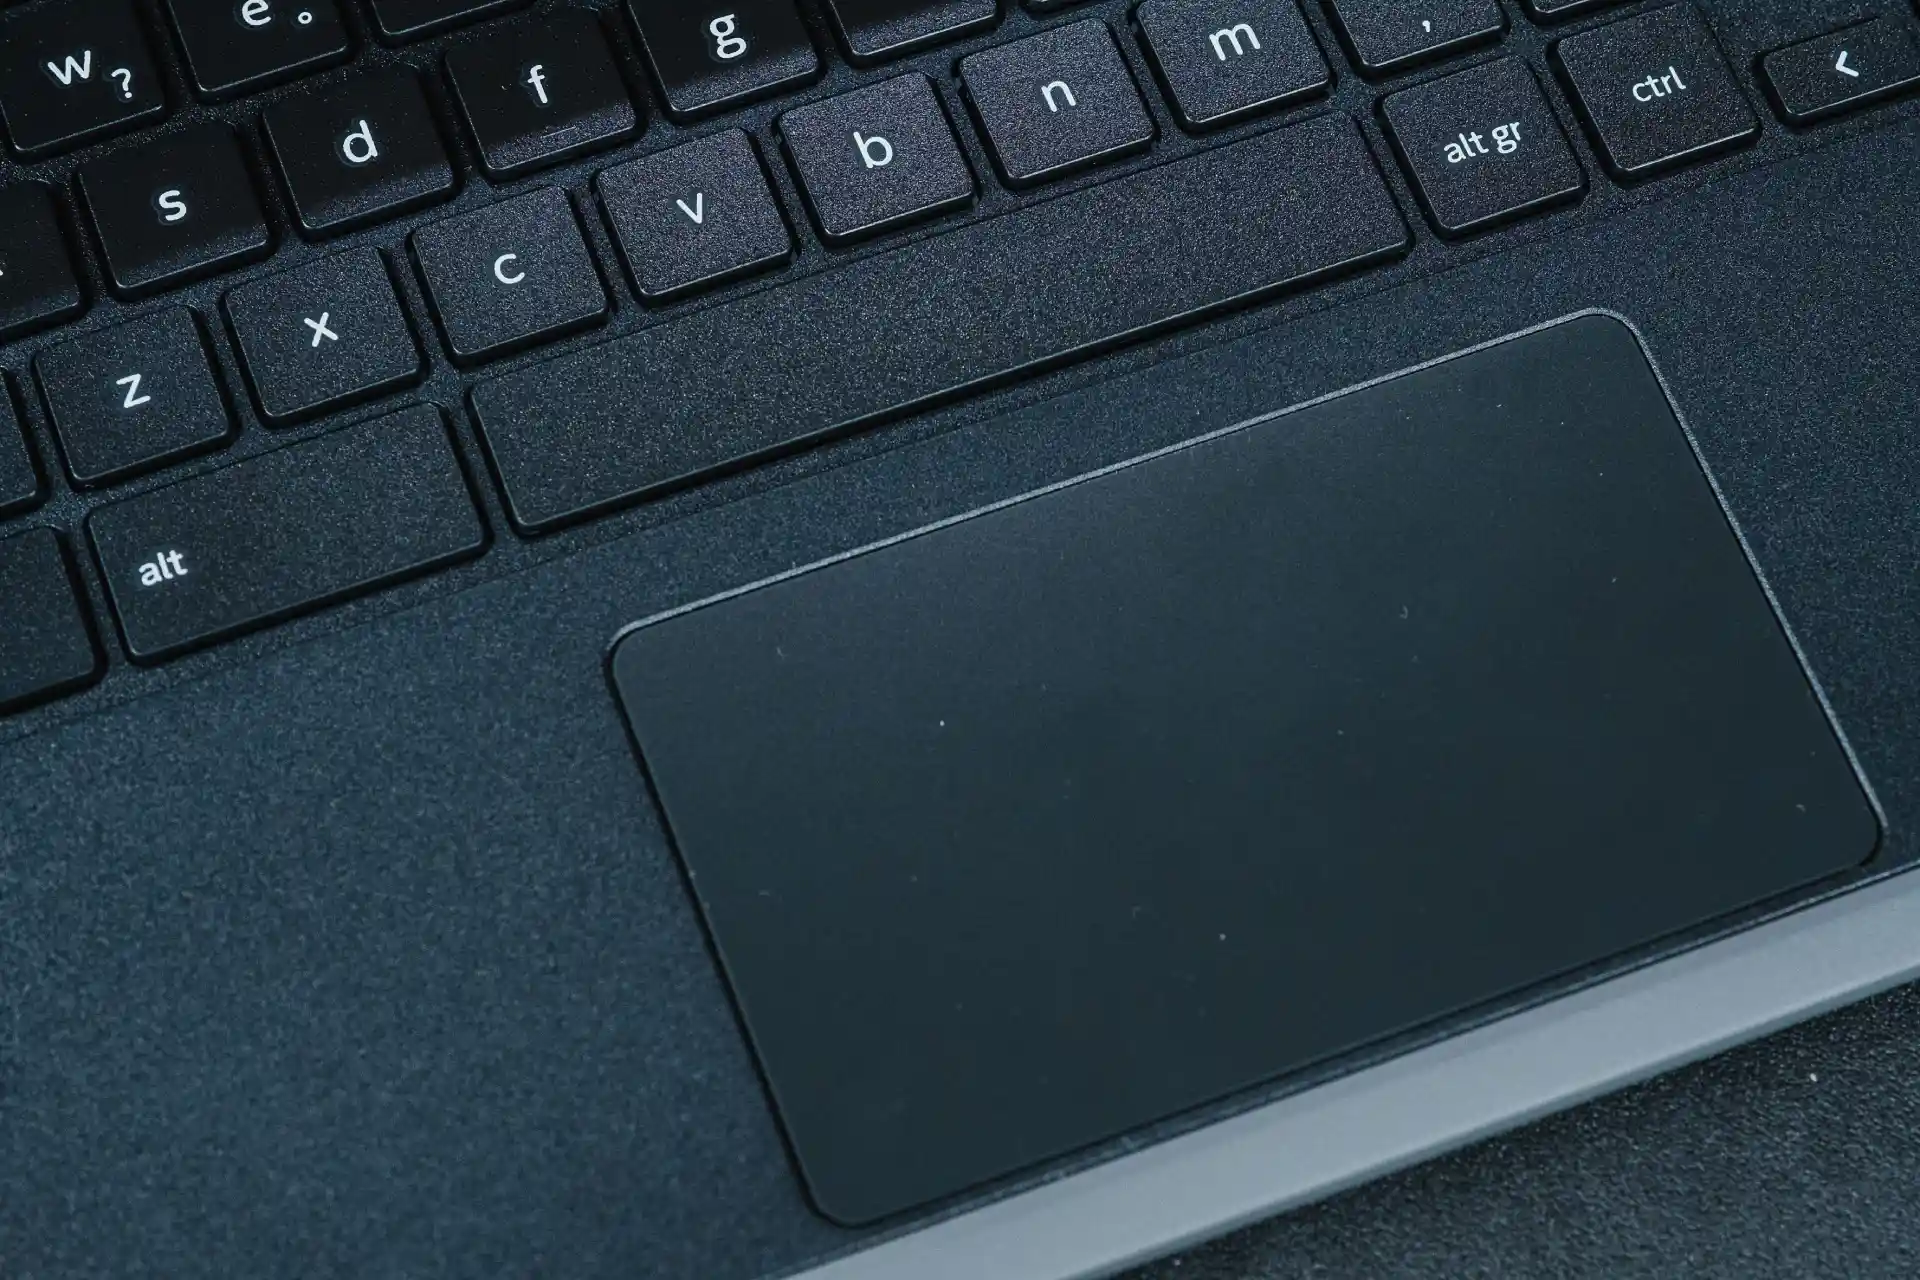 Foto do Acer Chromebook com zoom na área de trackpad